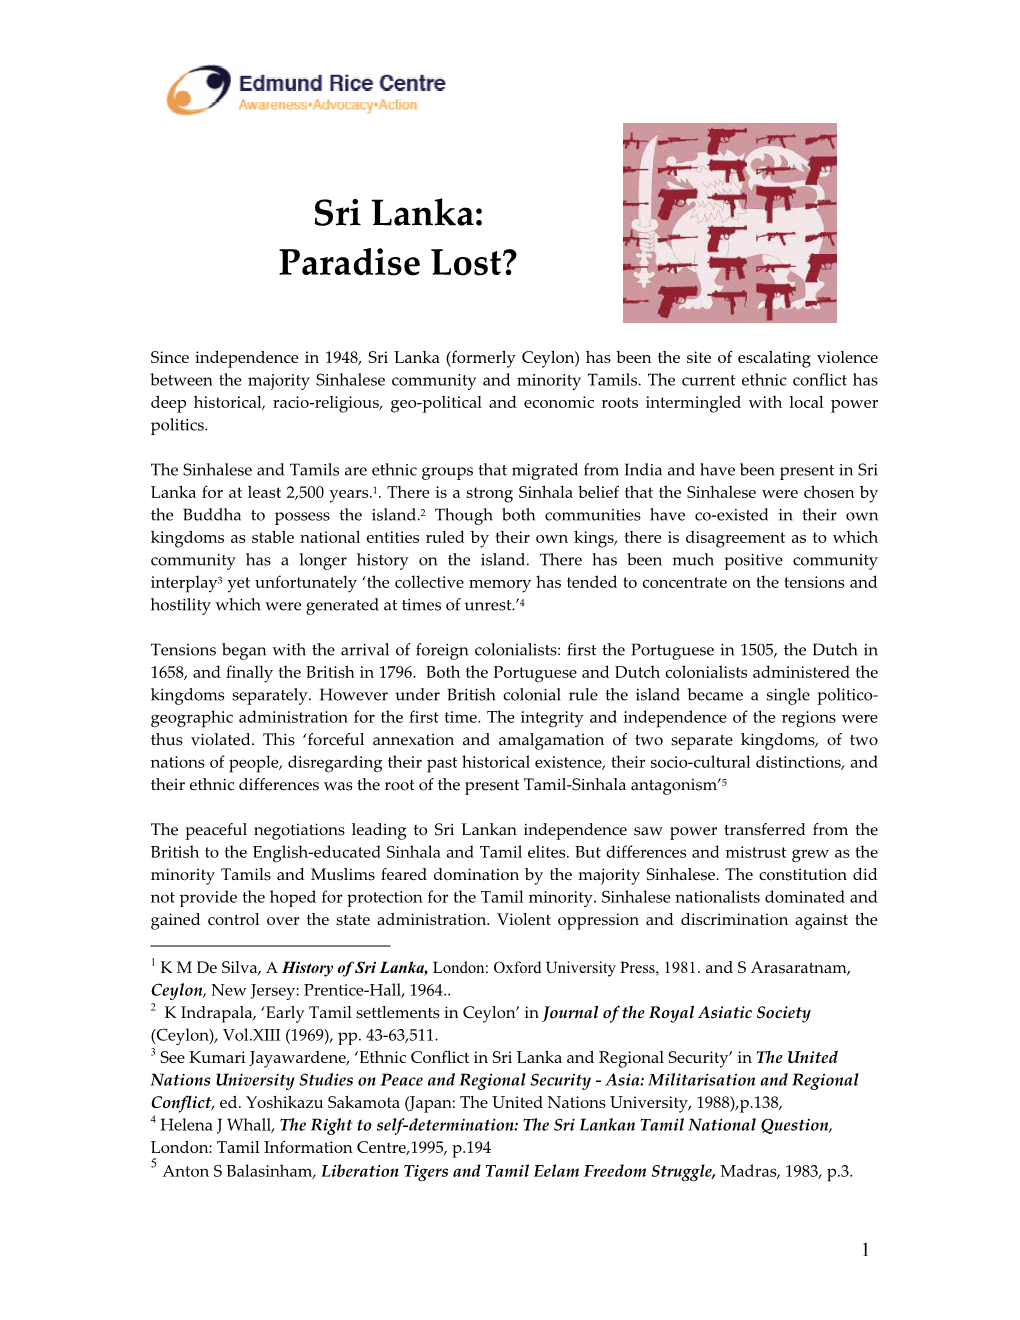 Sri Lanka: Paradise Lost?